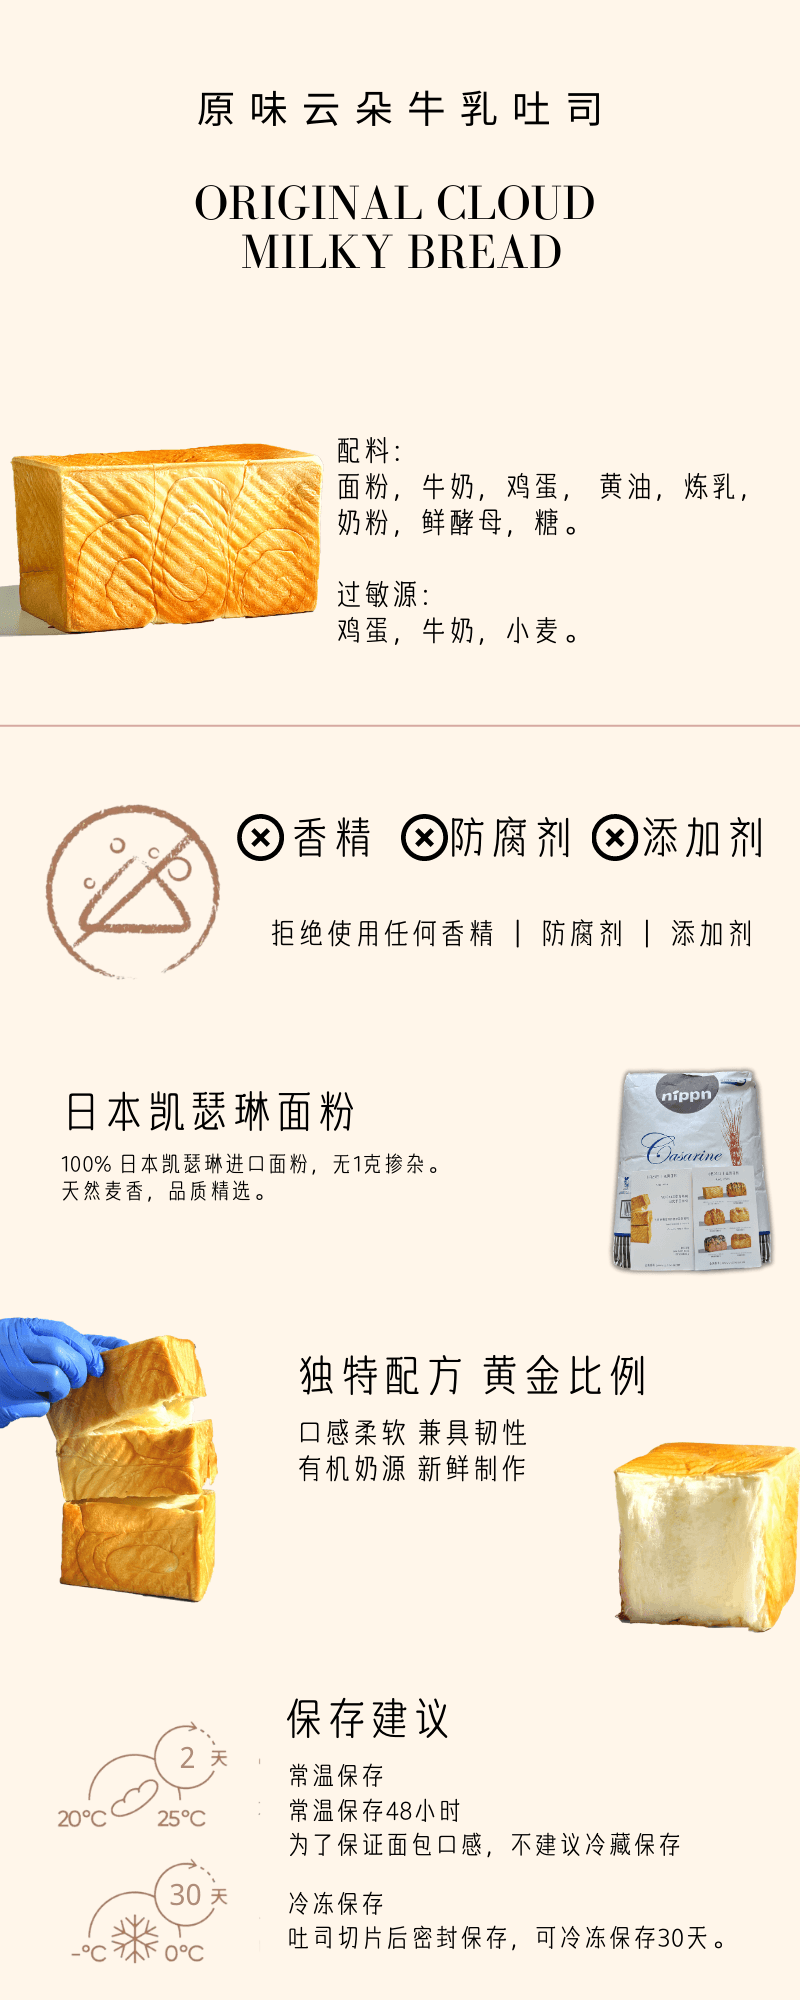 美国 Yu Cake 手工面包 榴莲乳酪 1 each